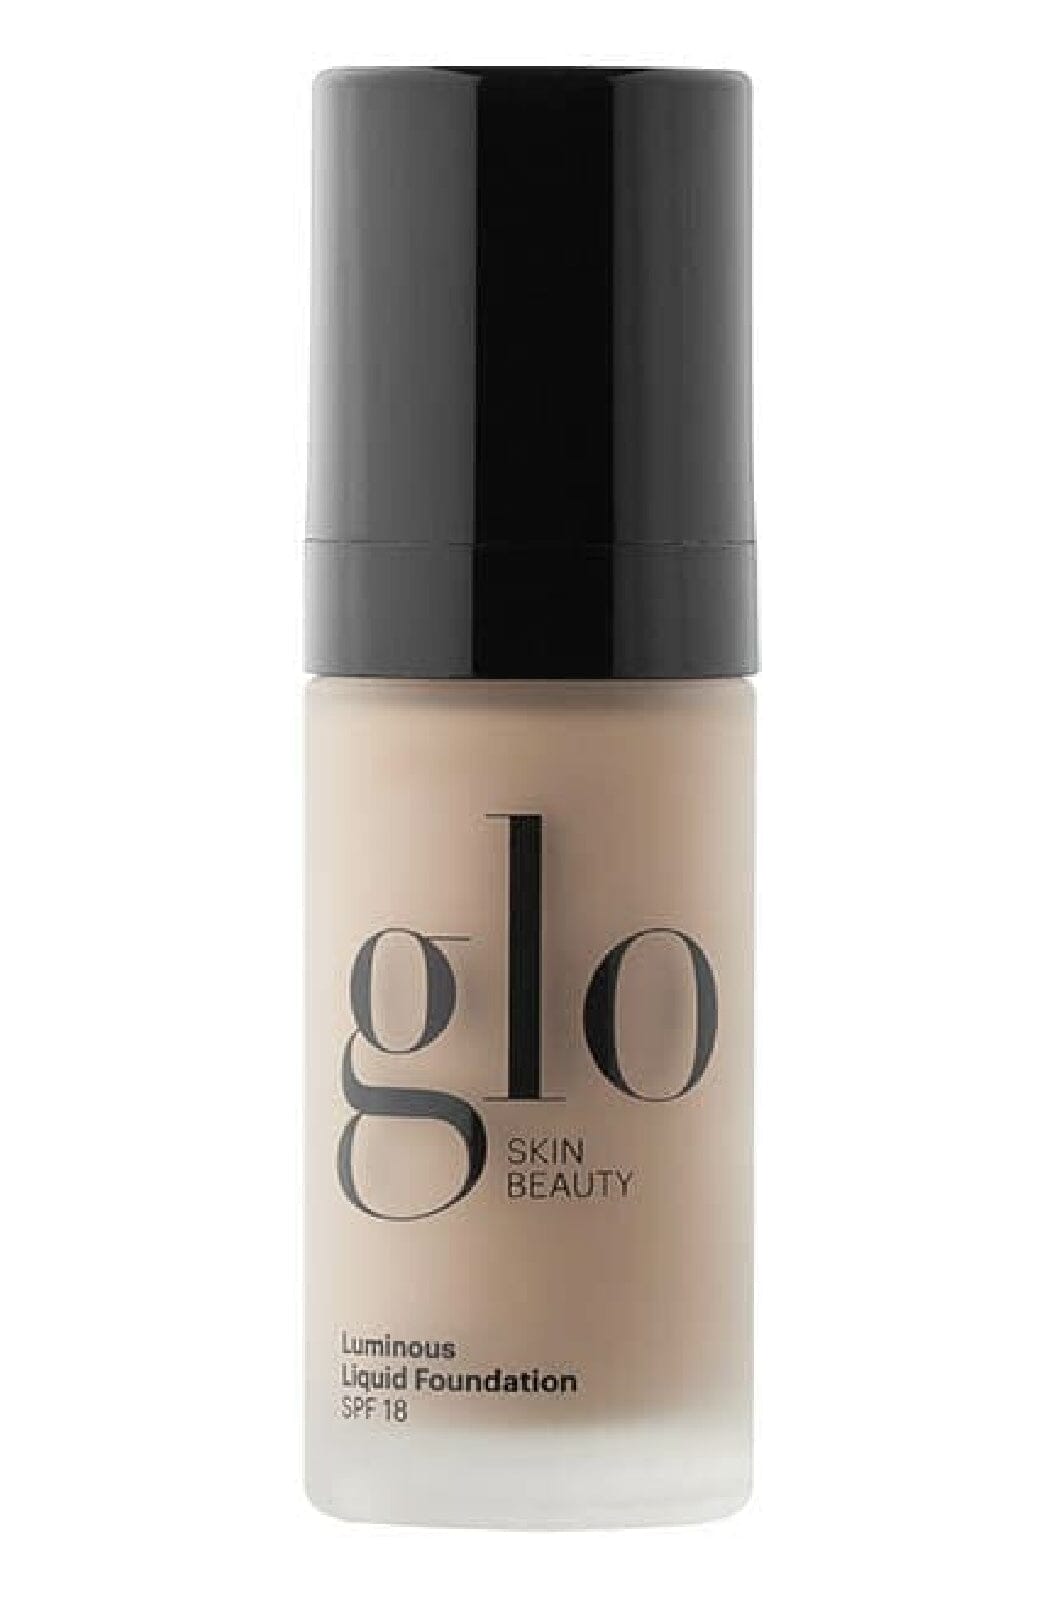 Glo Skin Beauty - Glo Luminous Liquid Foundation SPF 18 - Naturelle, 30 ml Foundation 